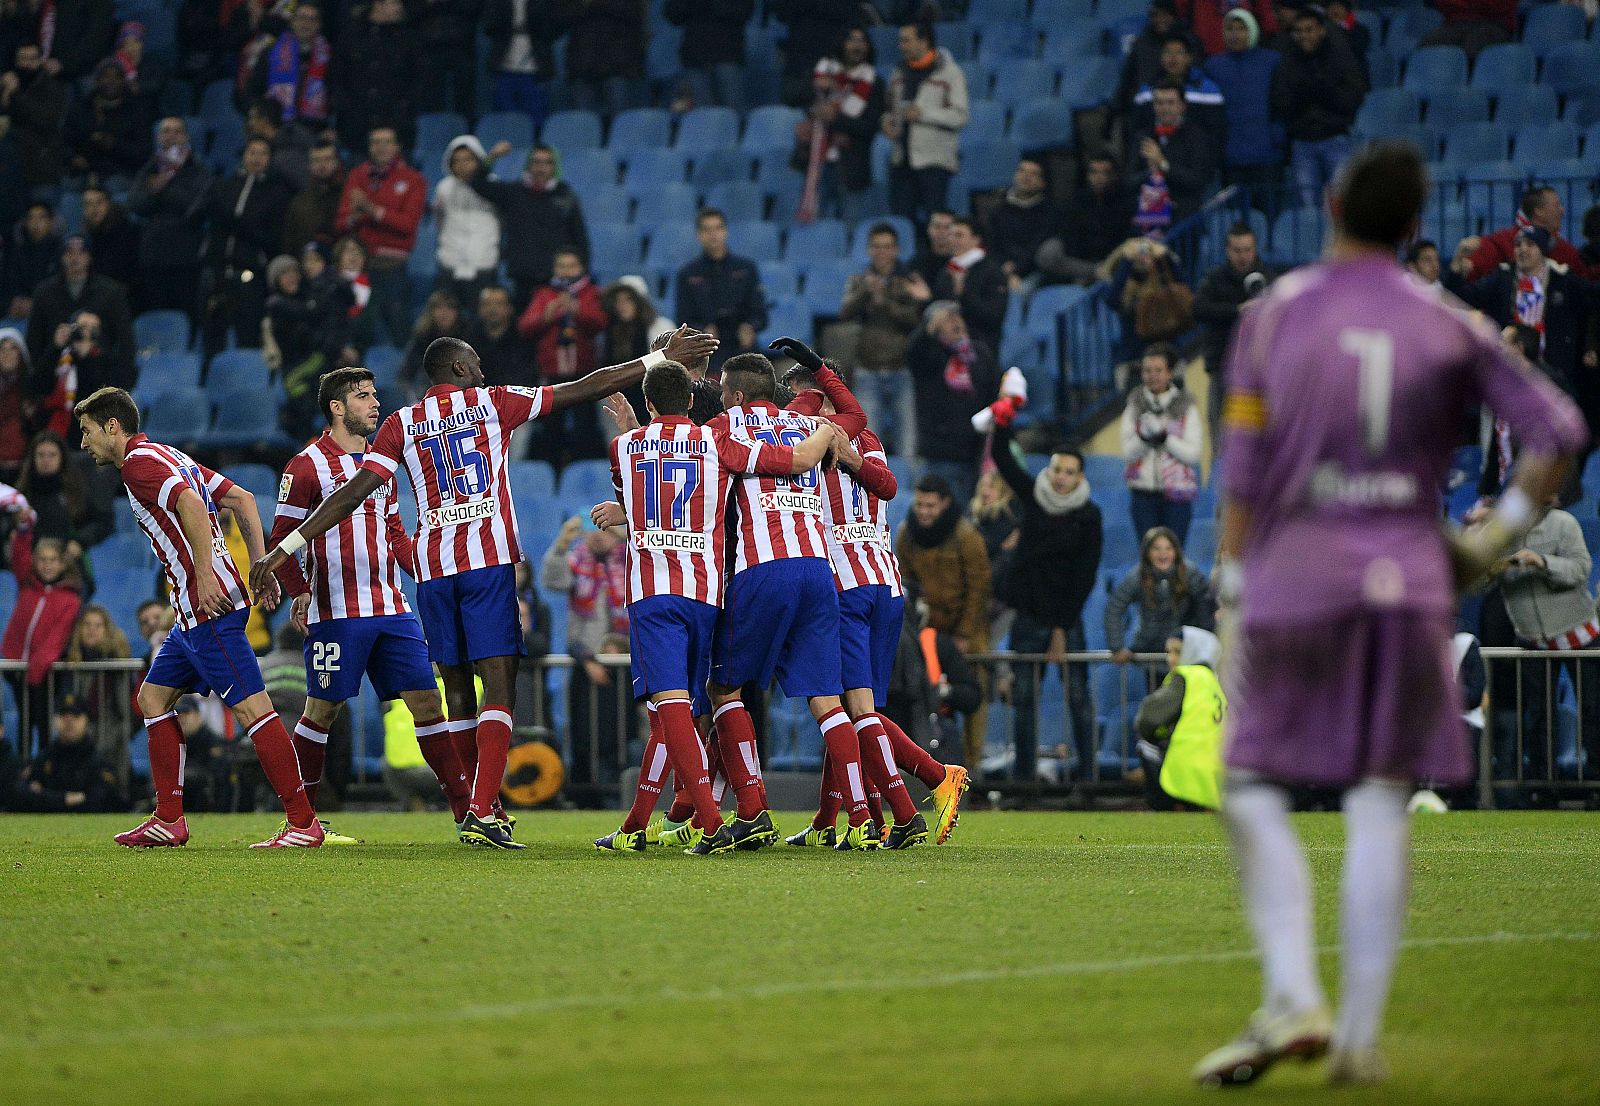 Los jugadores atléticos celebran el gol de la victoria sobre el Sant Andreu.